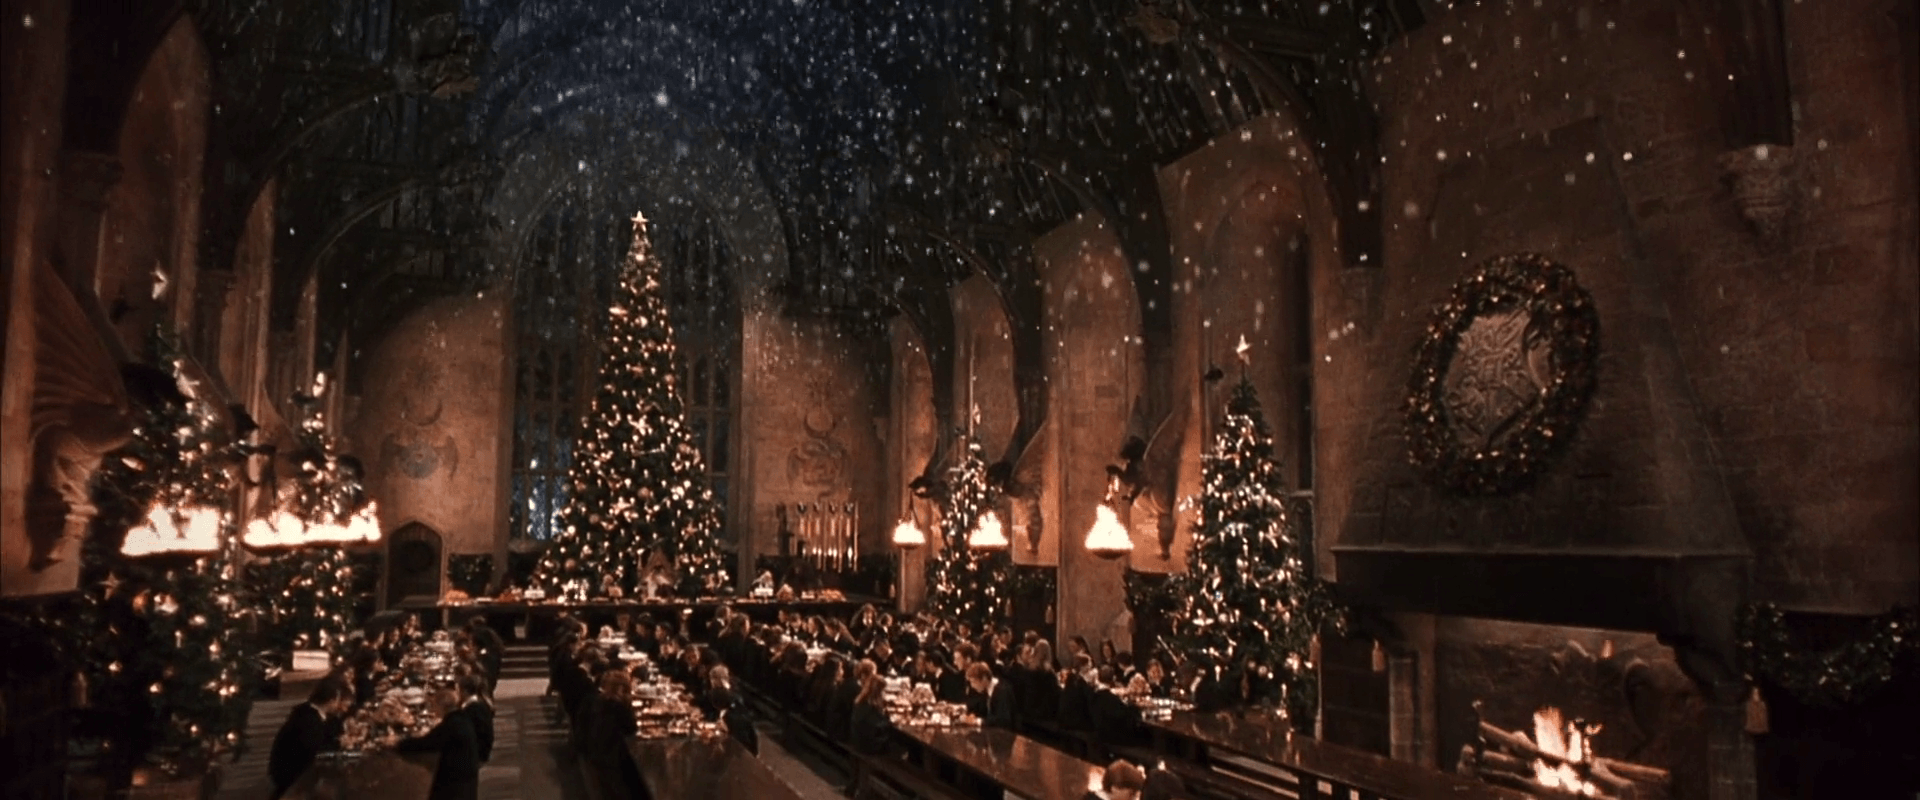 Bạn đang tìm kiếm ảnh nền Harry Potter Giáng sinh miễn phí? Không cần phải đi đâu xa, chỉ cần truy cập vào Top Free Harry Potter Christmas Computer Wallpapers của chúng tôi là bạn có thể có được bộ sưu tập ảnh nền đầy phép thuật, rực rỡ mà hoàn toàn miễn phí!